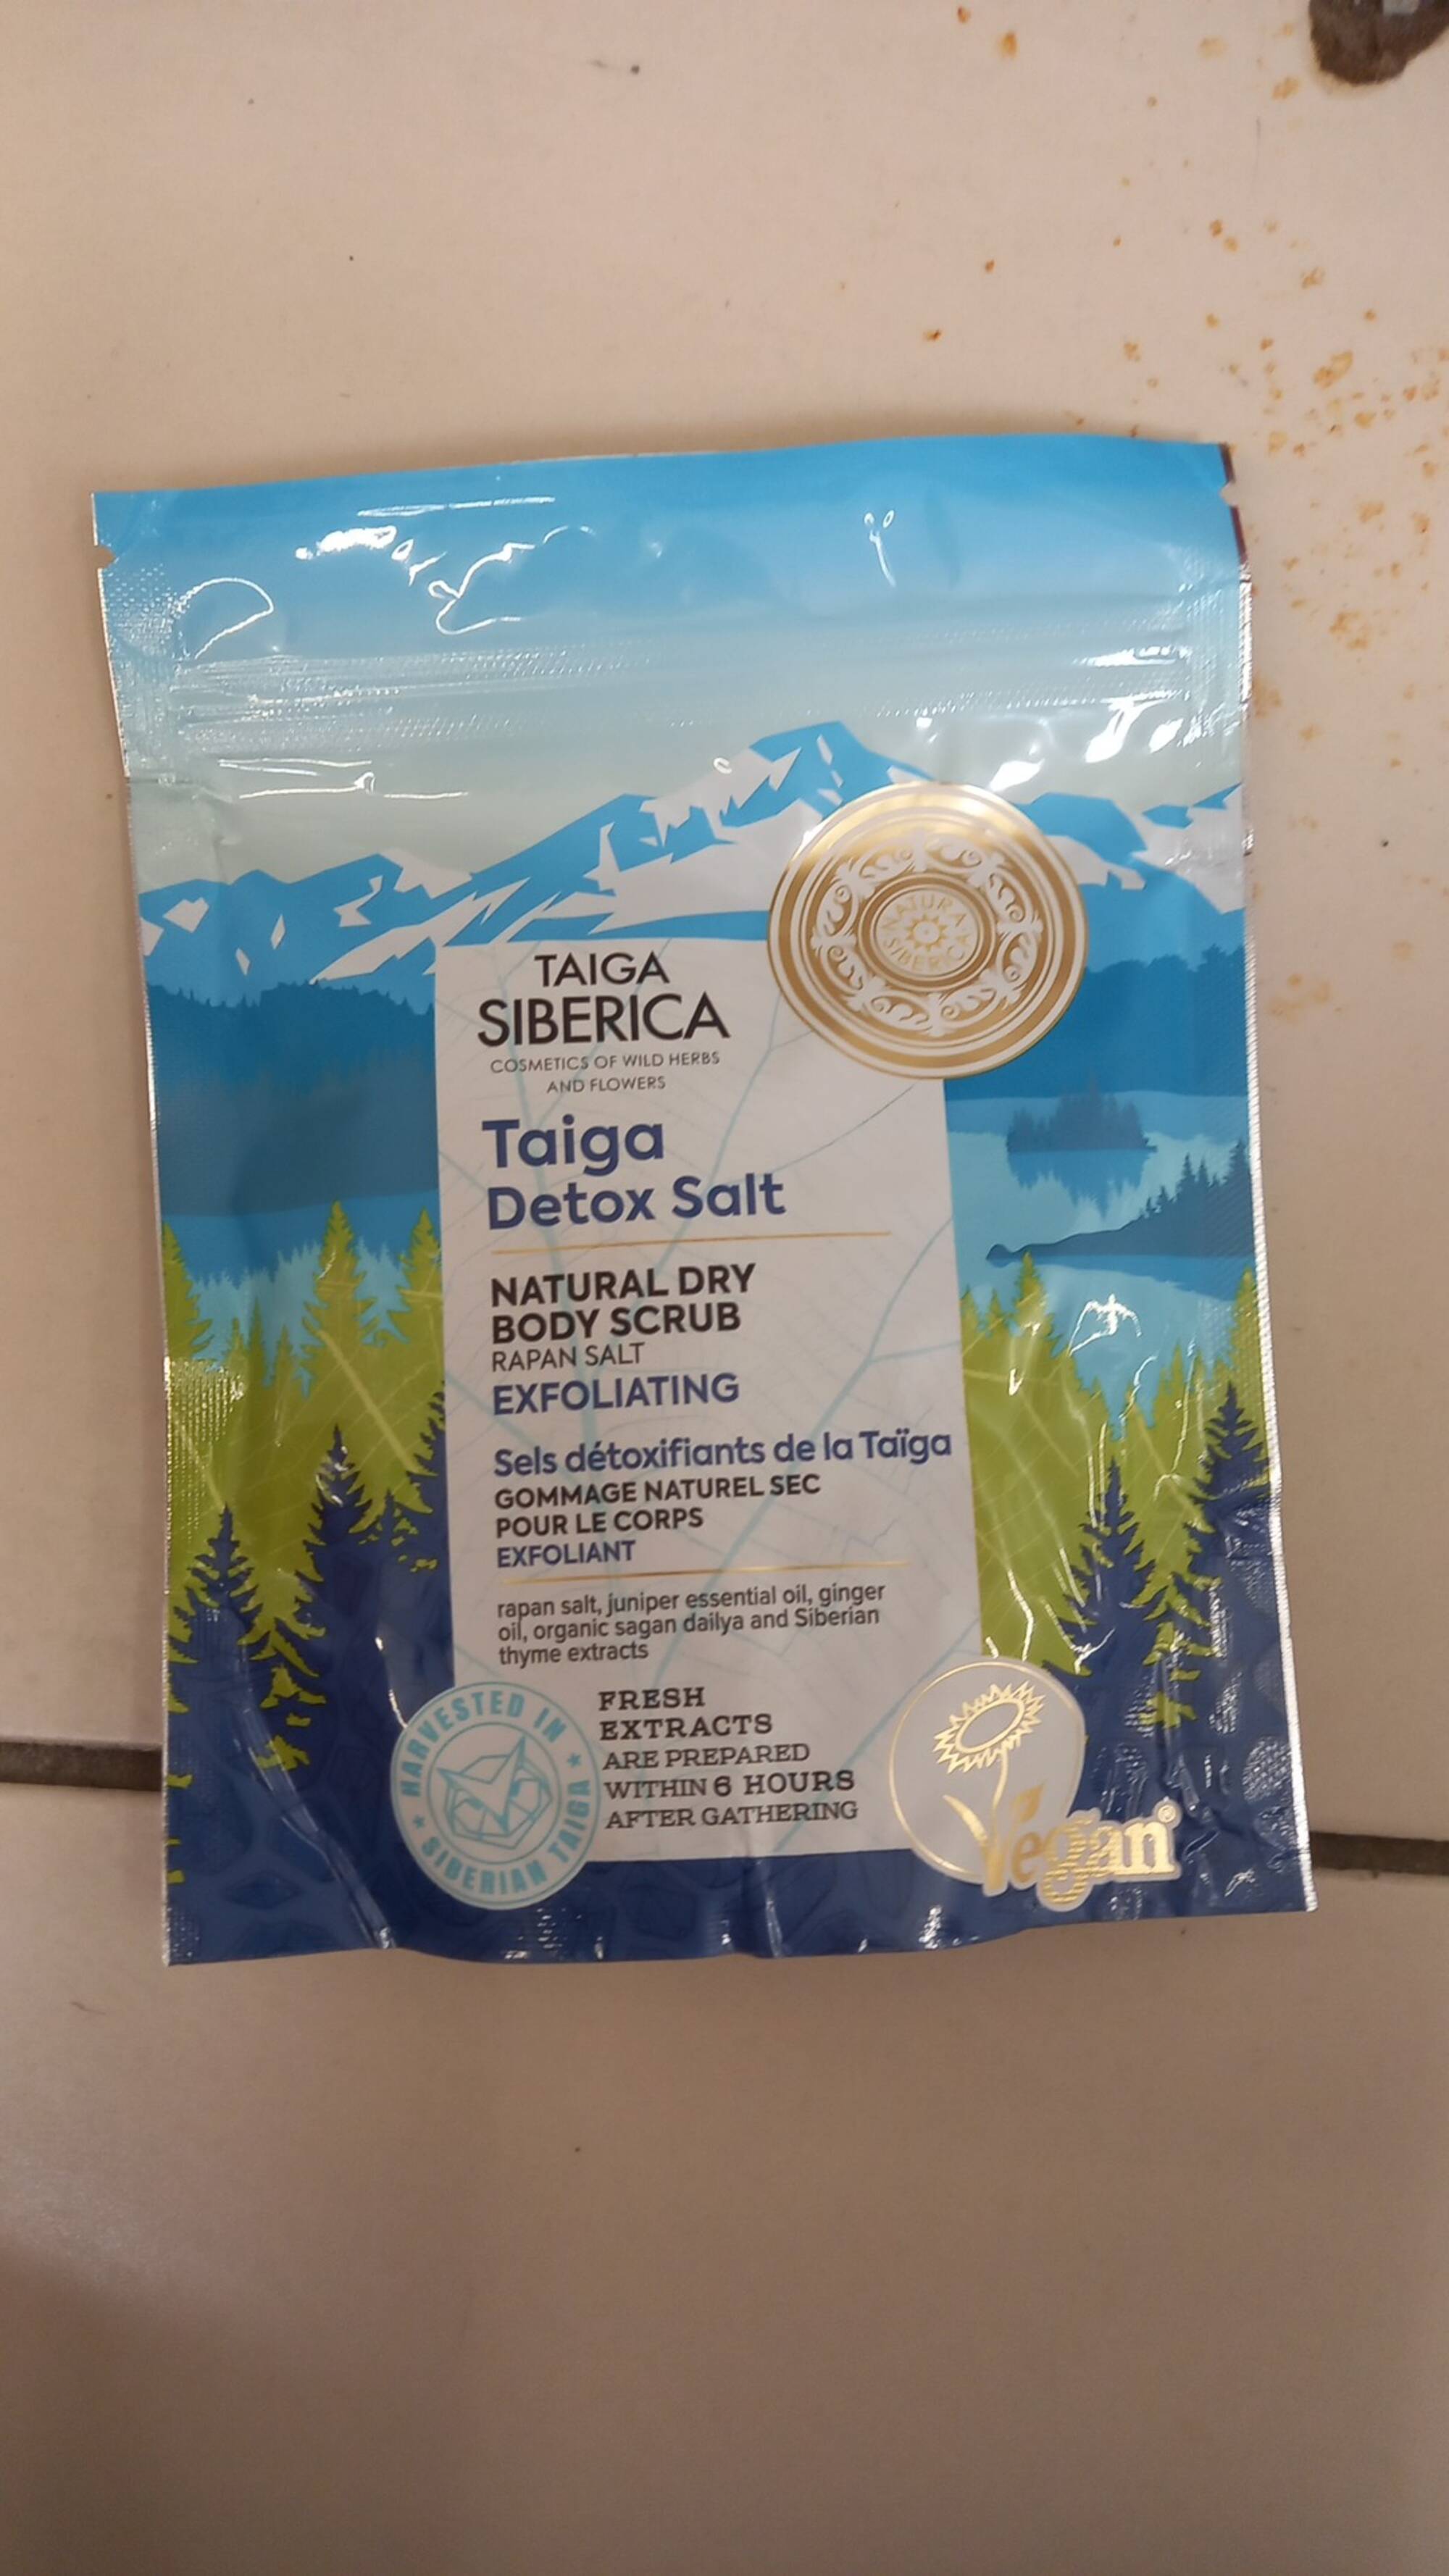 NATURA SIBERICA - Taiga siberica - Taiga detox salt Gommage naturel sec